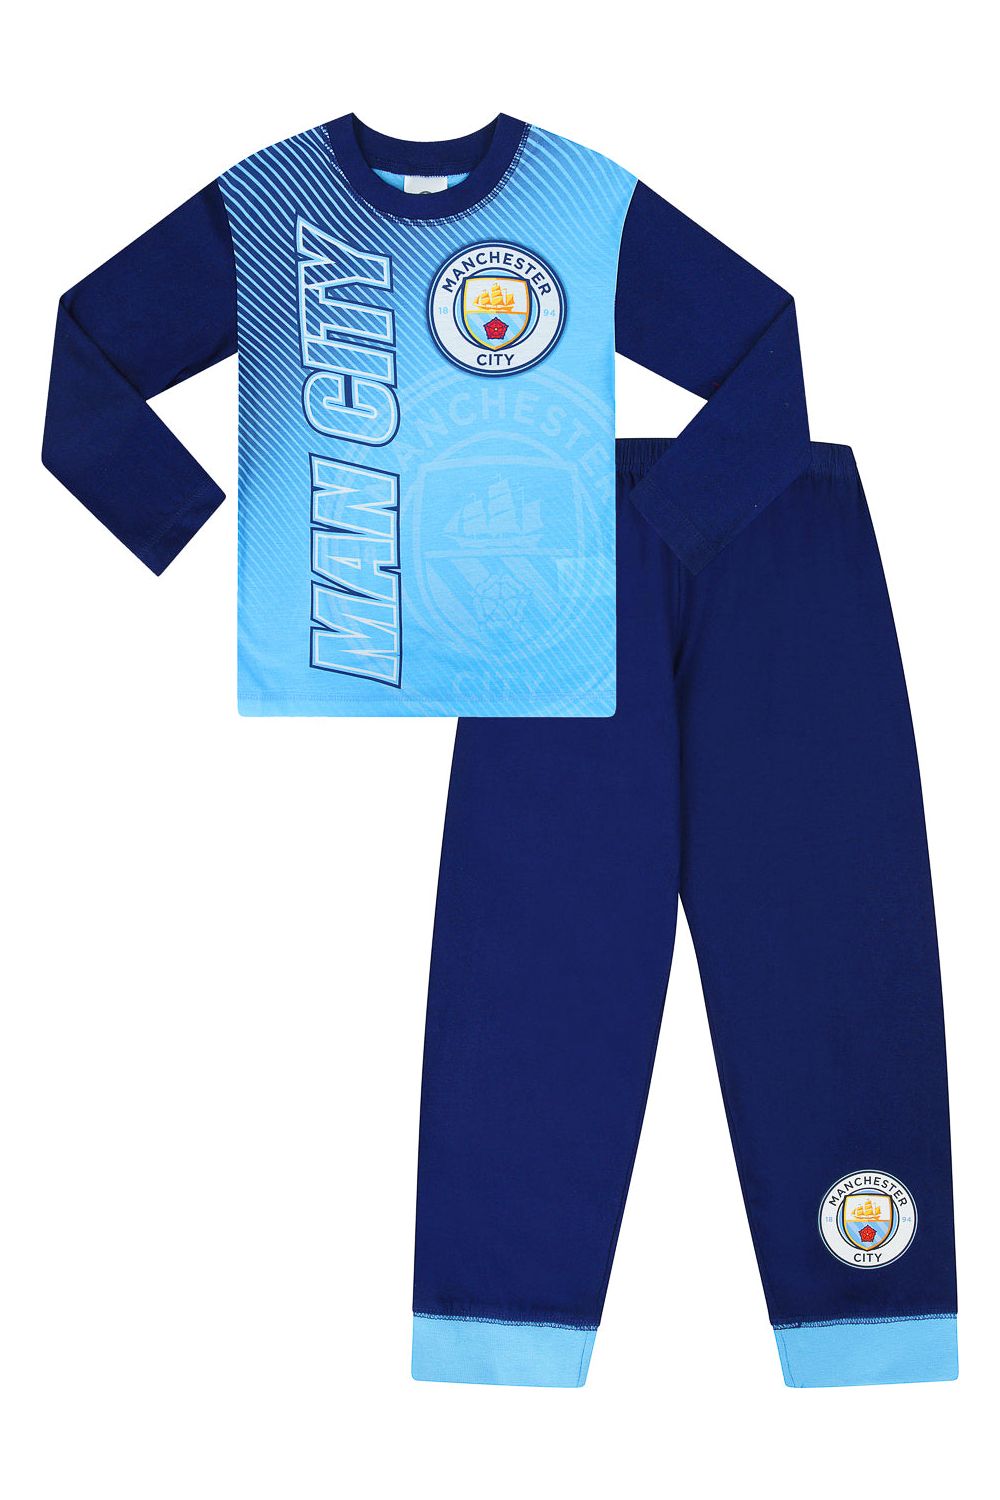 Official Manchester City FC Pyjamas - Pyjamas.com